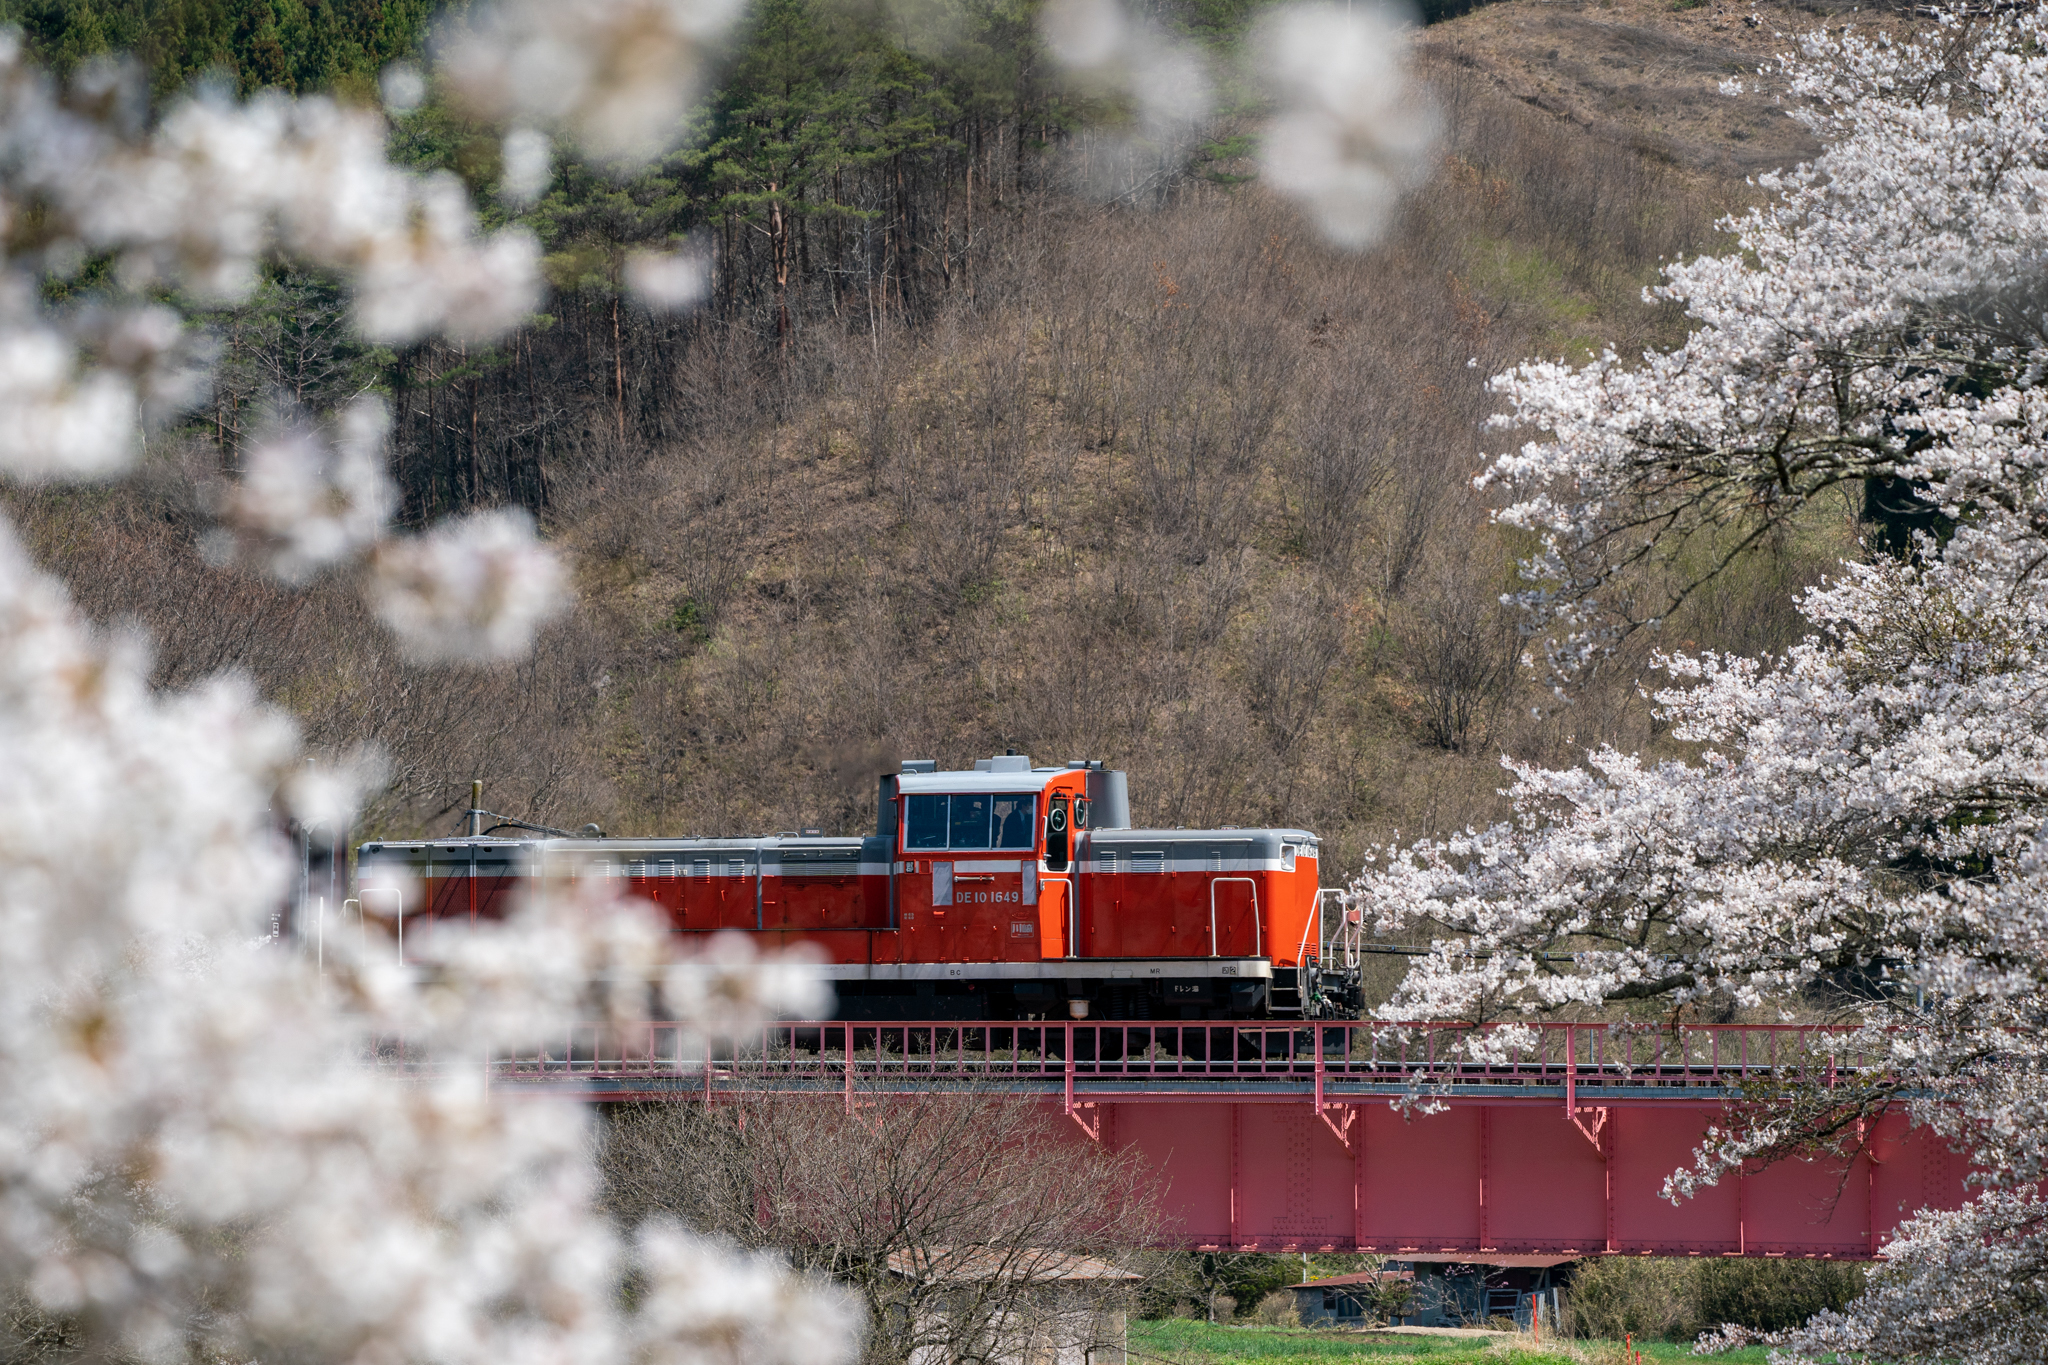 20220417_夏井川の両岸いっぱいの桜と陽春磐越東西線号の送り込み回送